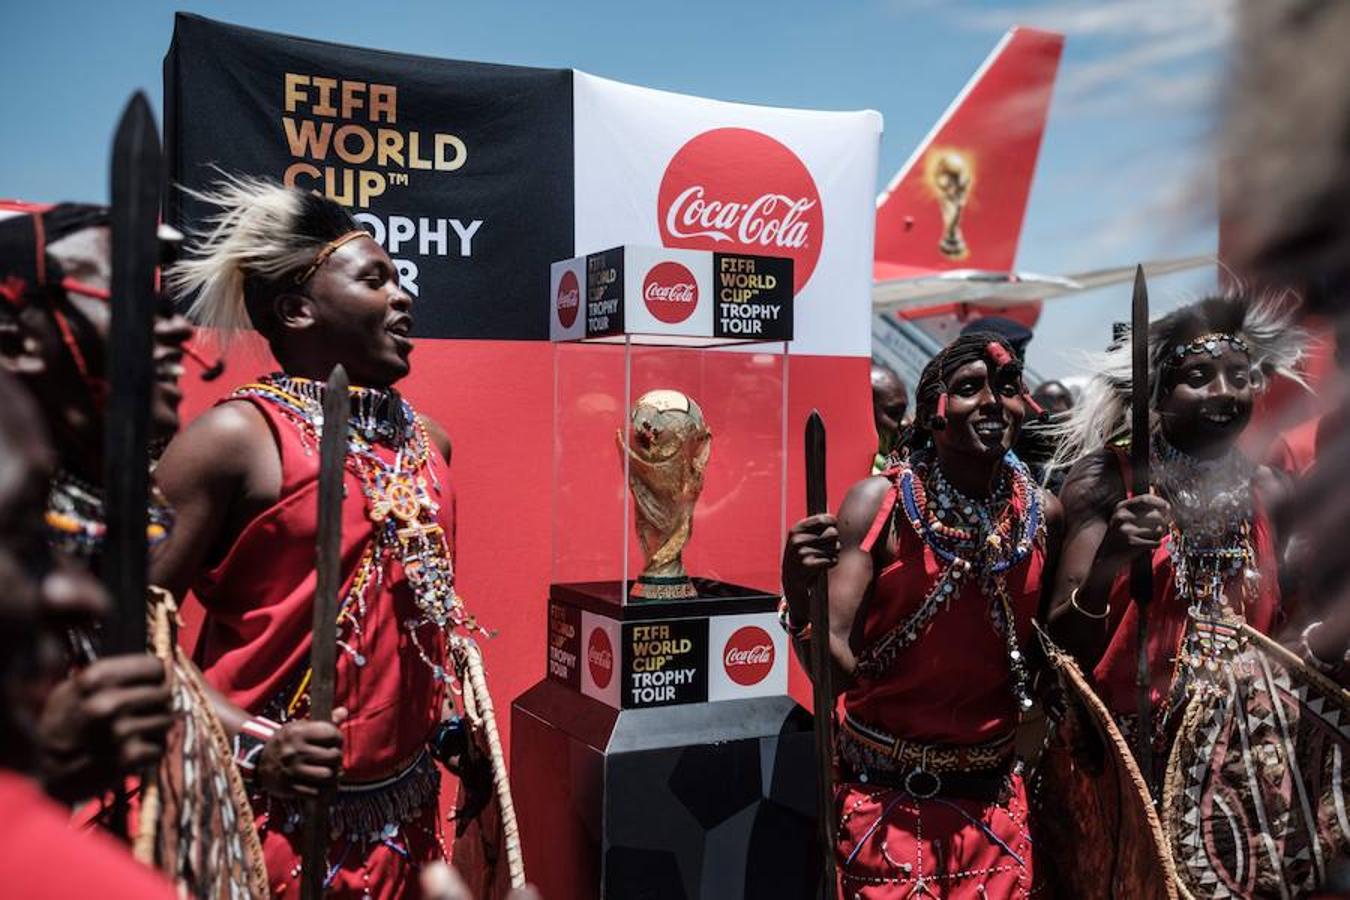 El avión especial que transporta el Trofeo de la Copa Mundial de la FIFA durante su Gira Mundial ya ha llegado al aeropuerto internacional Jomo Kenyatta de Nairobi, Kenia. Un grupo de bailarines vestidos con atuendos tradicionales del país han recibido el trofeo en un ambiente muy festivo.